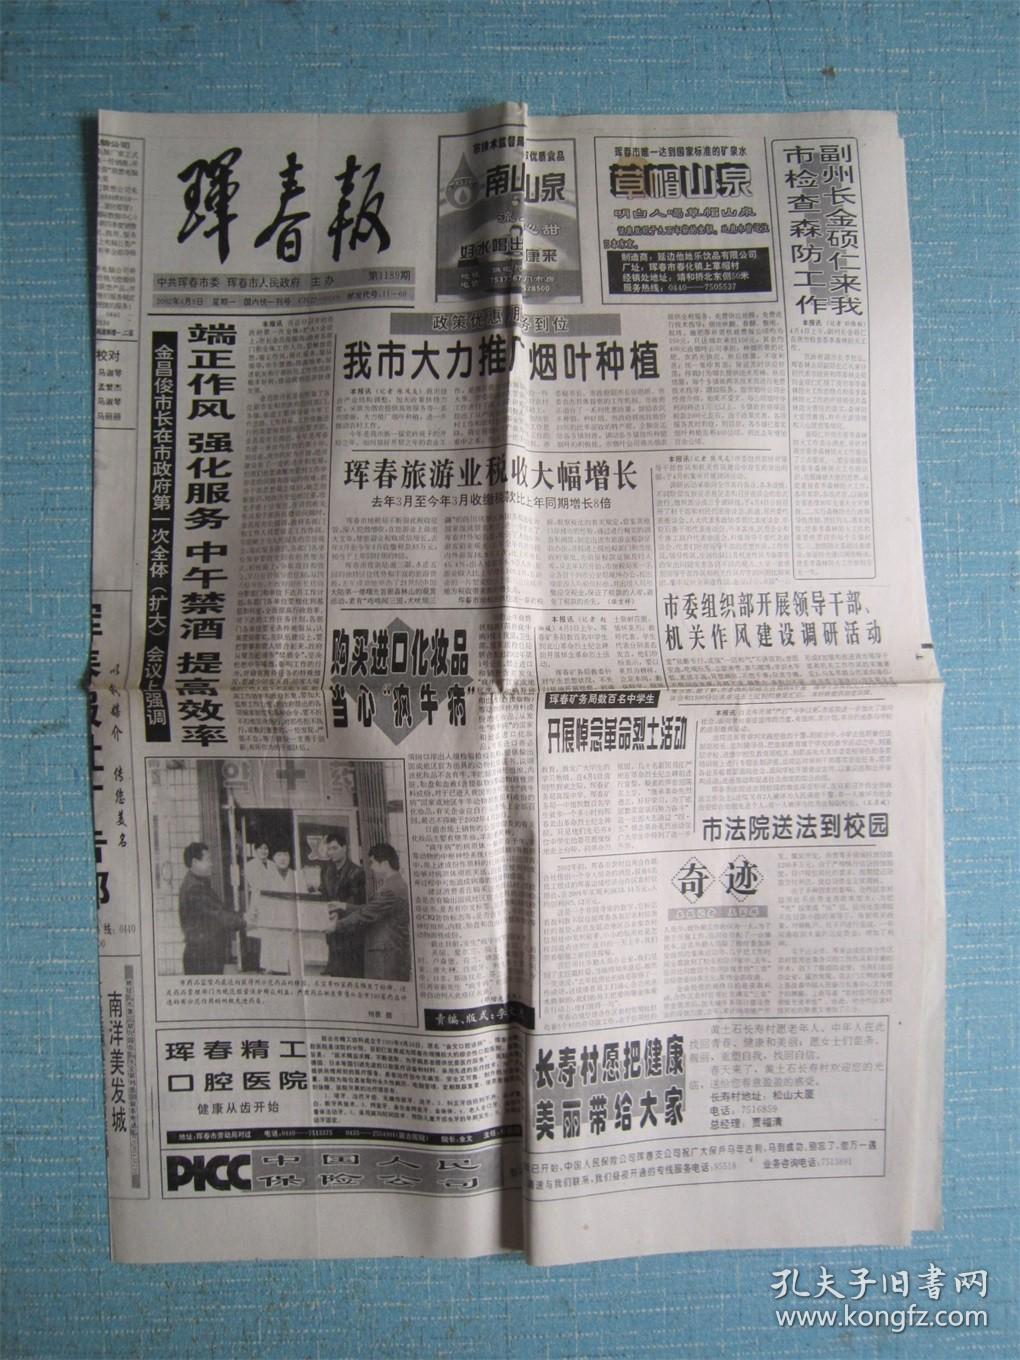 吉林普报——珲春报 2002.4.8日